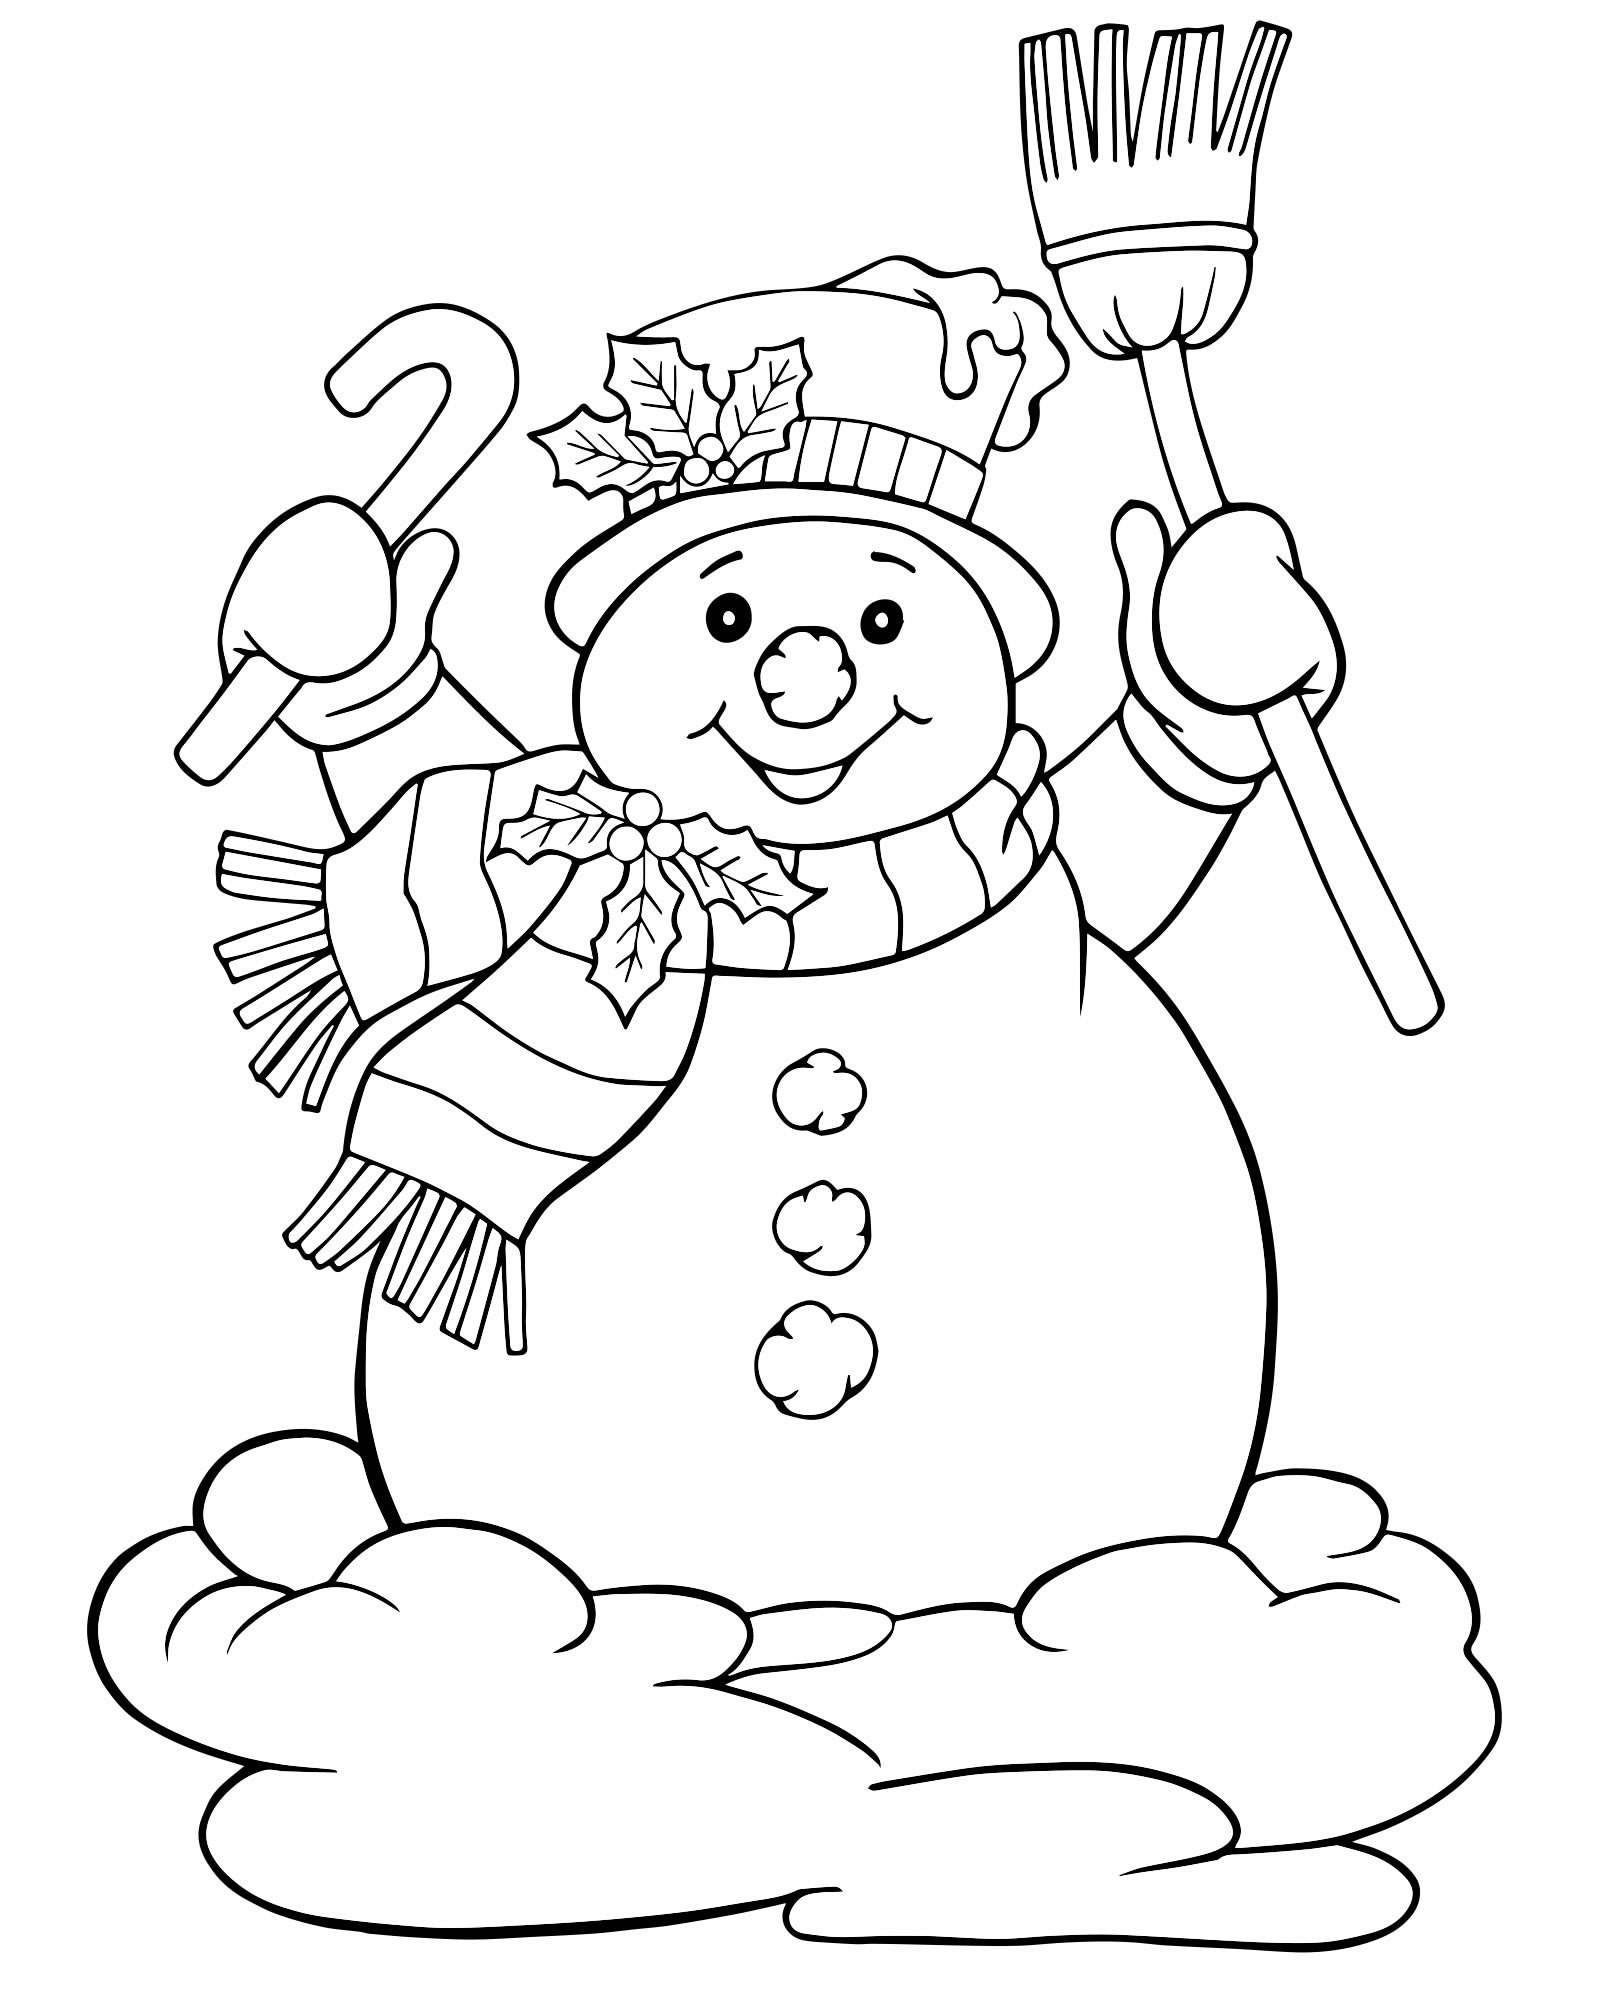 Красивый снеговик раскраска для детей